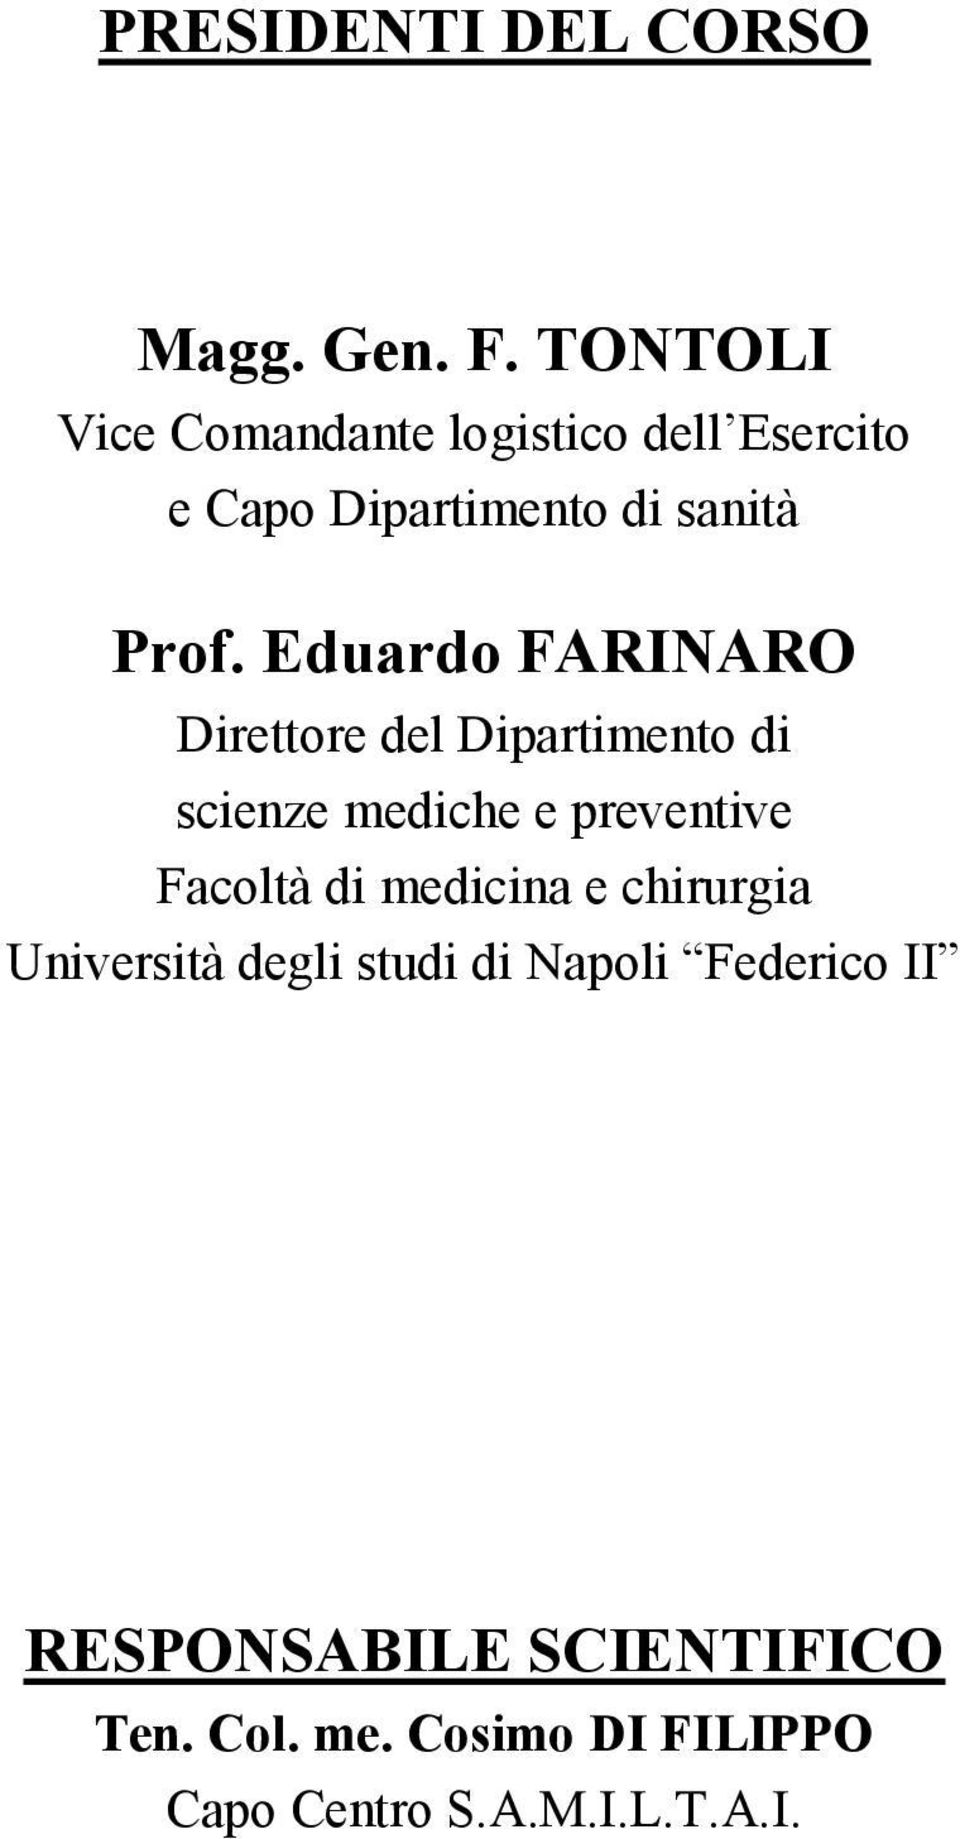 Eduardo FARINARO Direttore del Dipartimento di scienze mediche e preventive Facoltà di